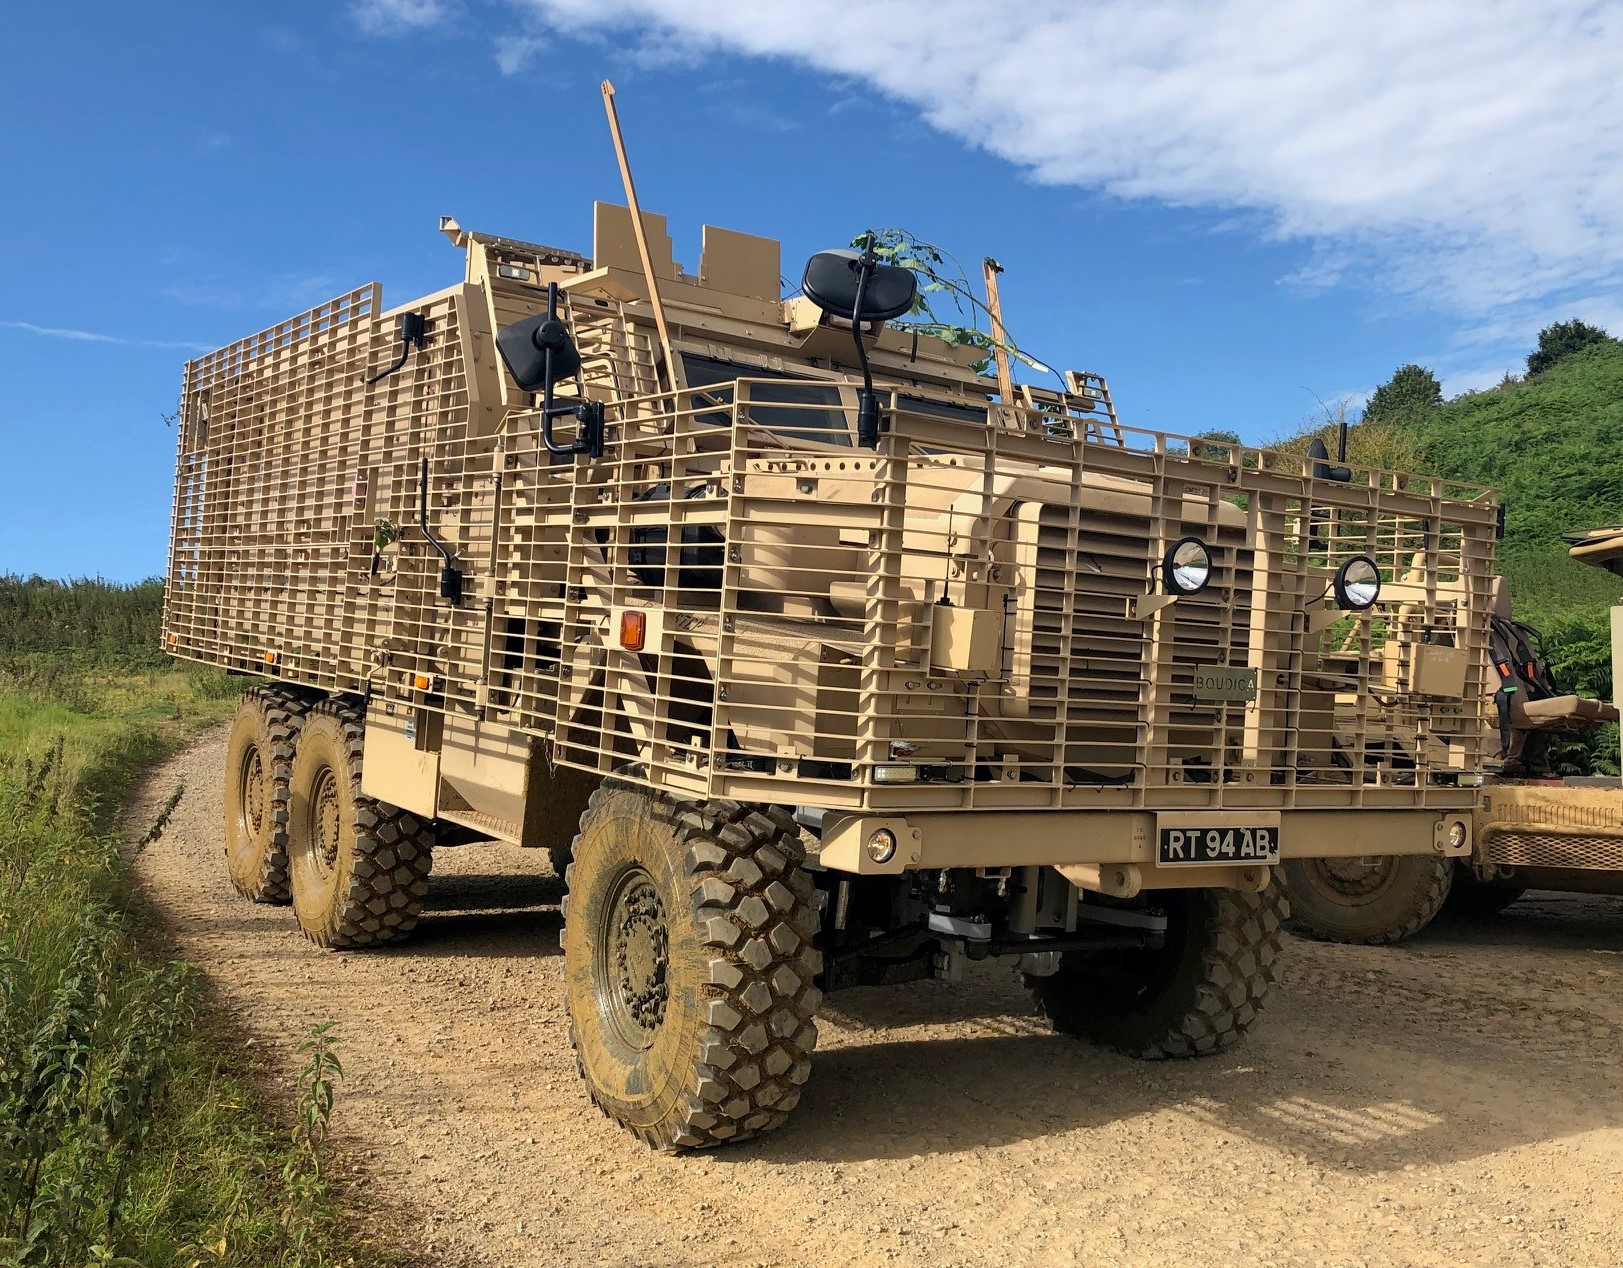 British Army Mastiff Armored Vehicle